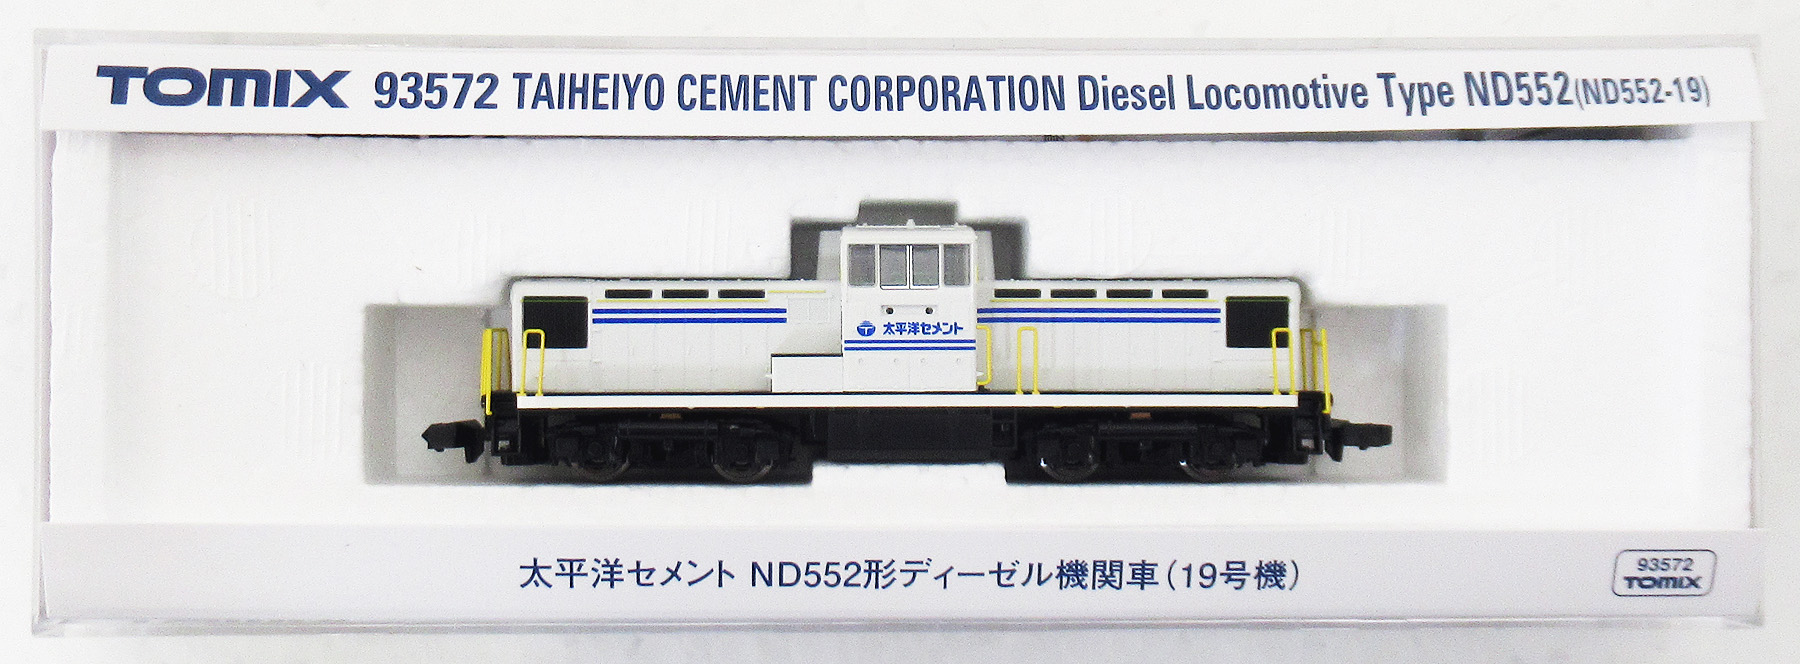 公式]鉄道模型(93572太平洋セメント ND552形ディーゼル機関車(19号機 ...